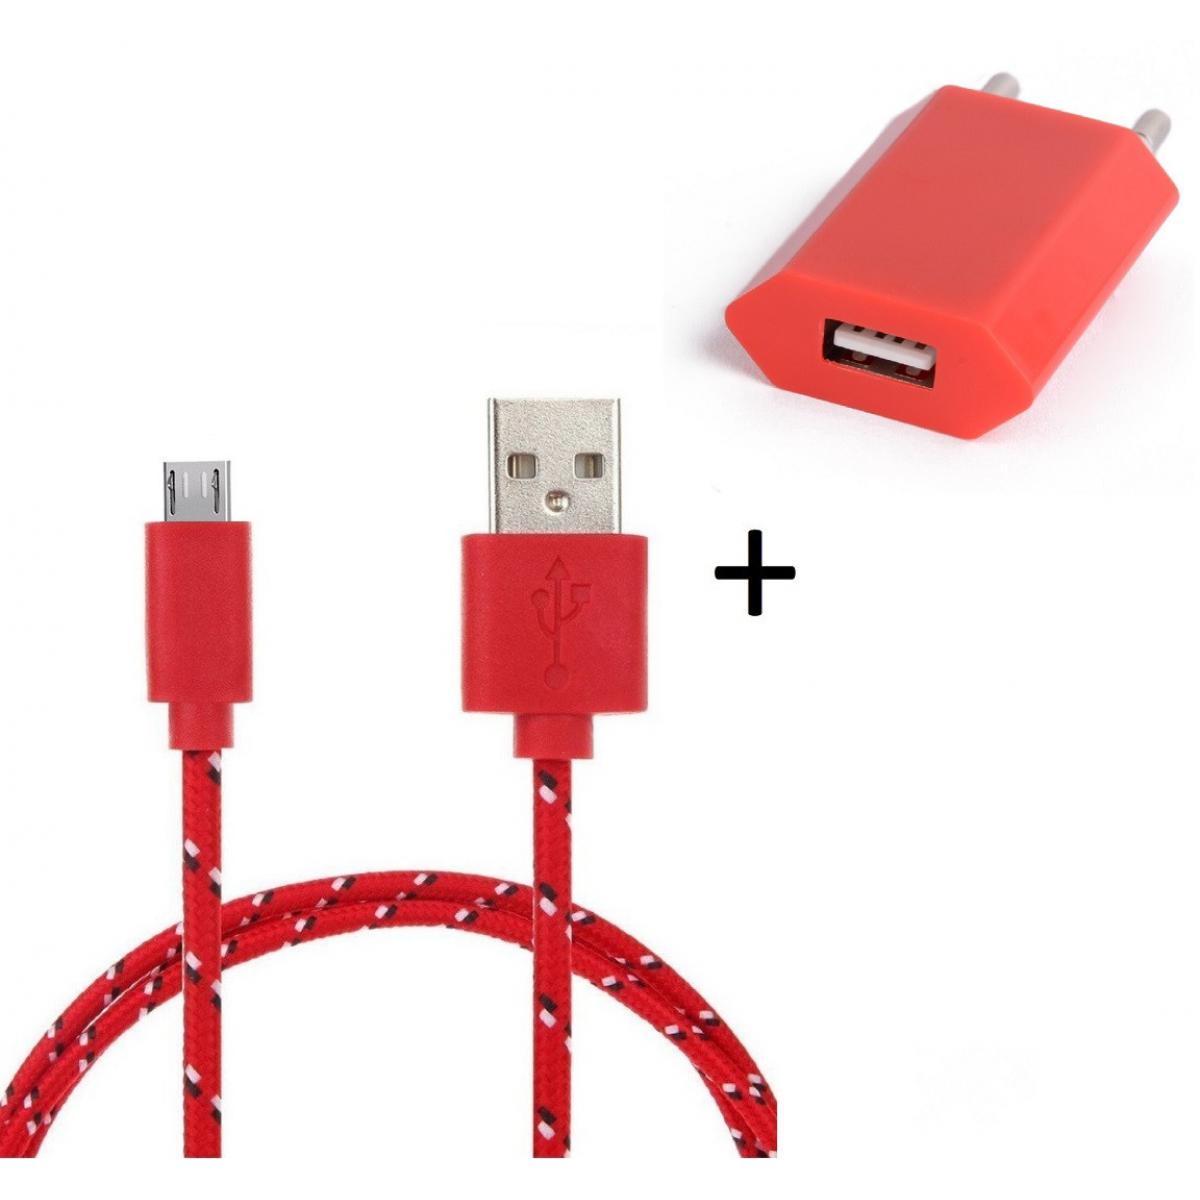 Shot - Pack Chargeur pour HUAWEI P smart 2019 Smartphone Micro USB (Cable Tresse 3m Chargeur + Prise Secteur USB) Murale Android (ROUGE) - Chargeur secteur téléphone